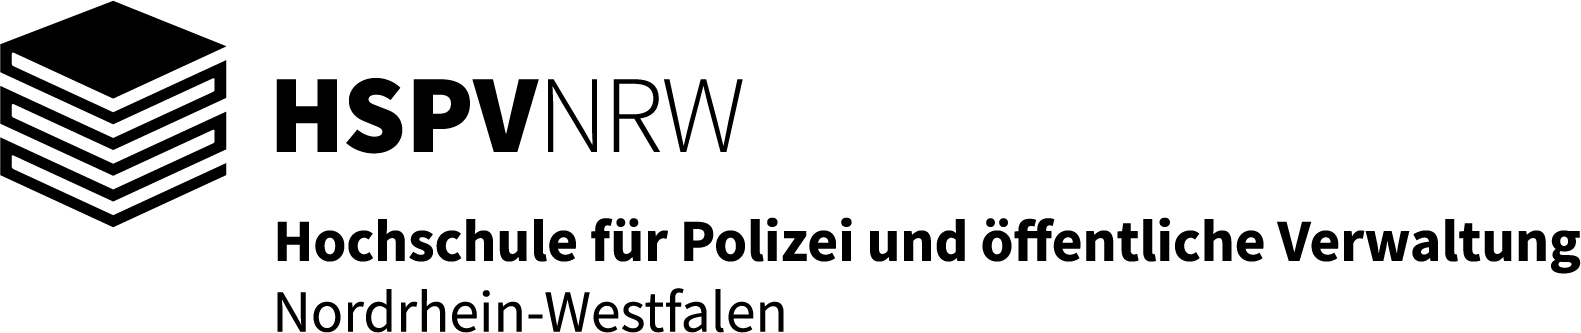 Logo: Hochschule für Polizei und öffentliche Verwaltung Nordrhein-Westfalen